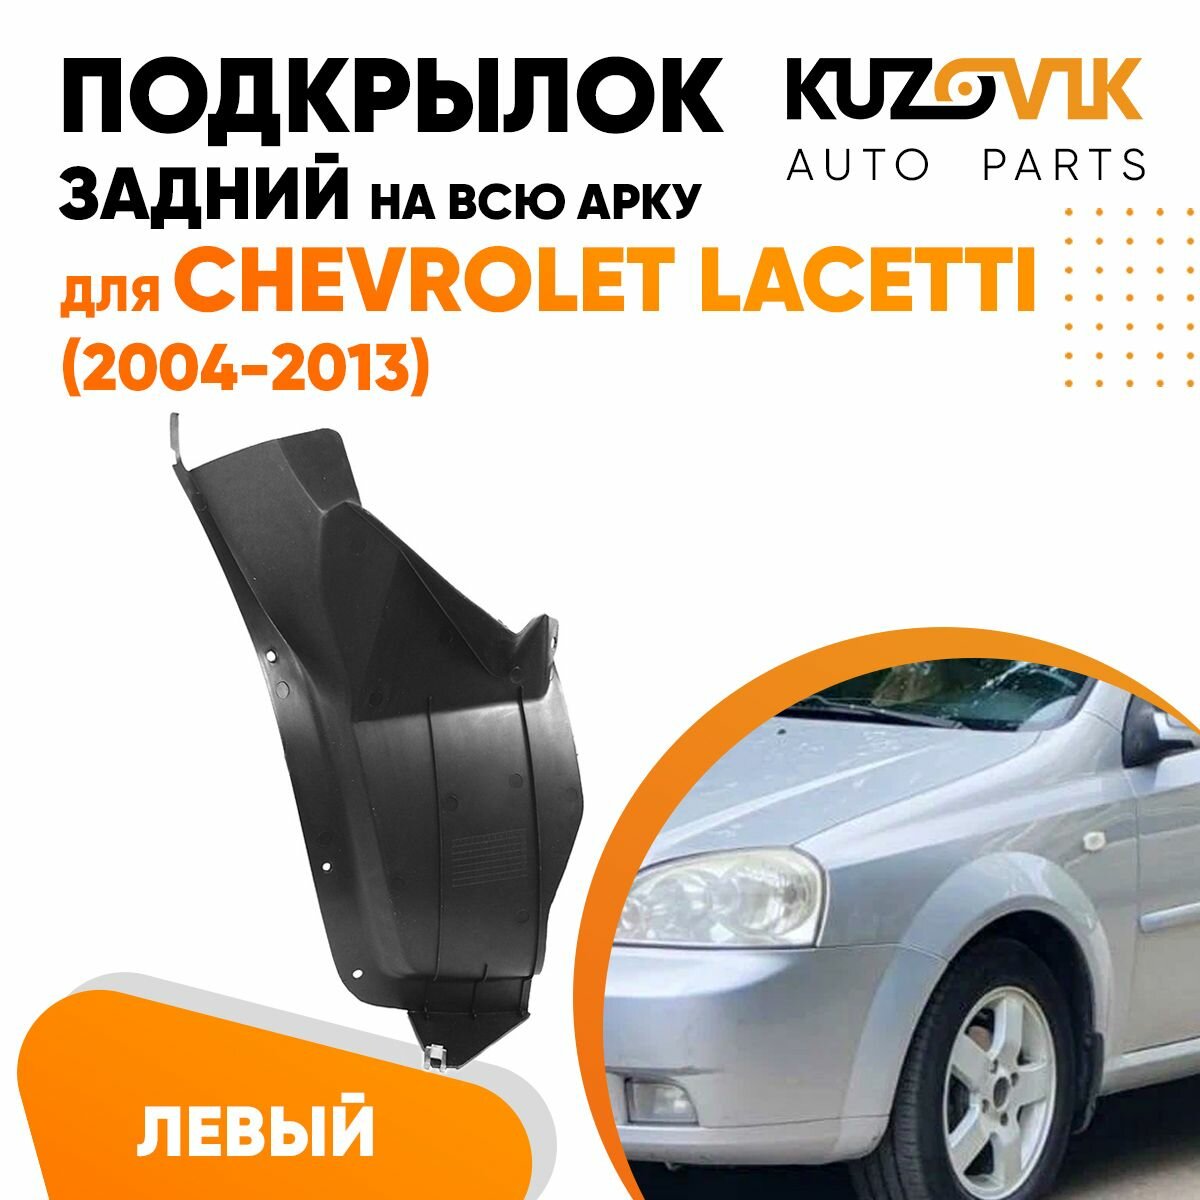 Подкрылок задний левый Chevrolet Lacetti Шевроле Лачетти (2004-2013) на всю арку